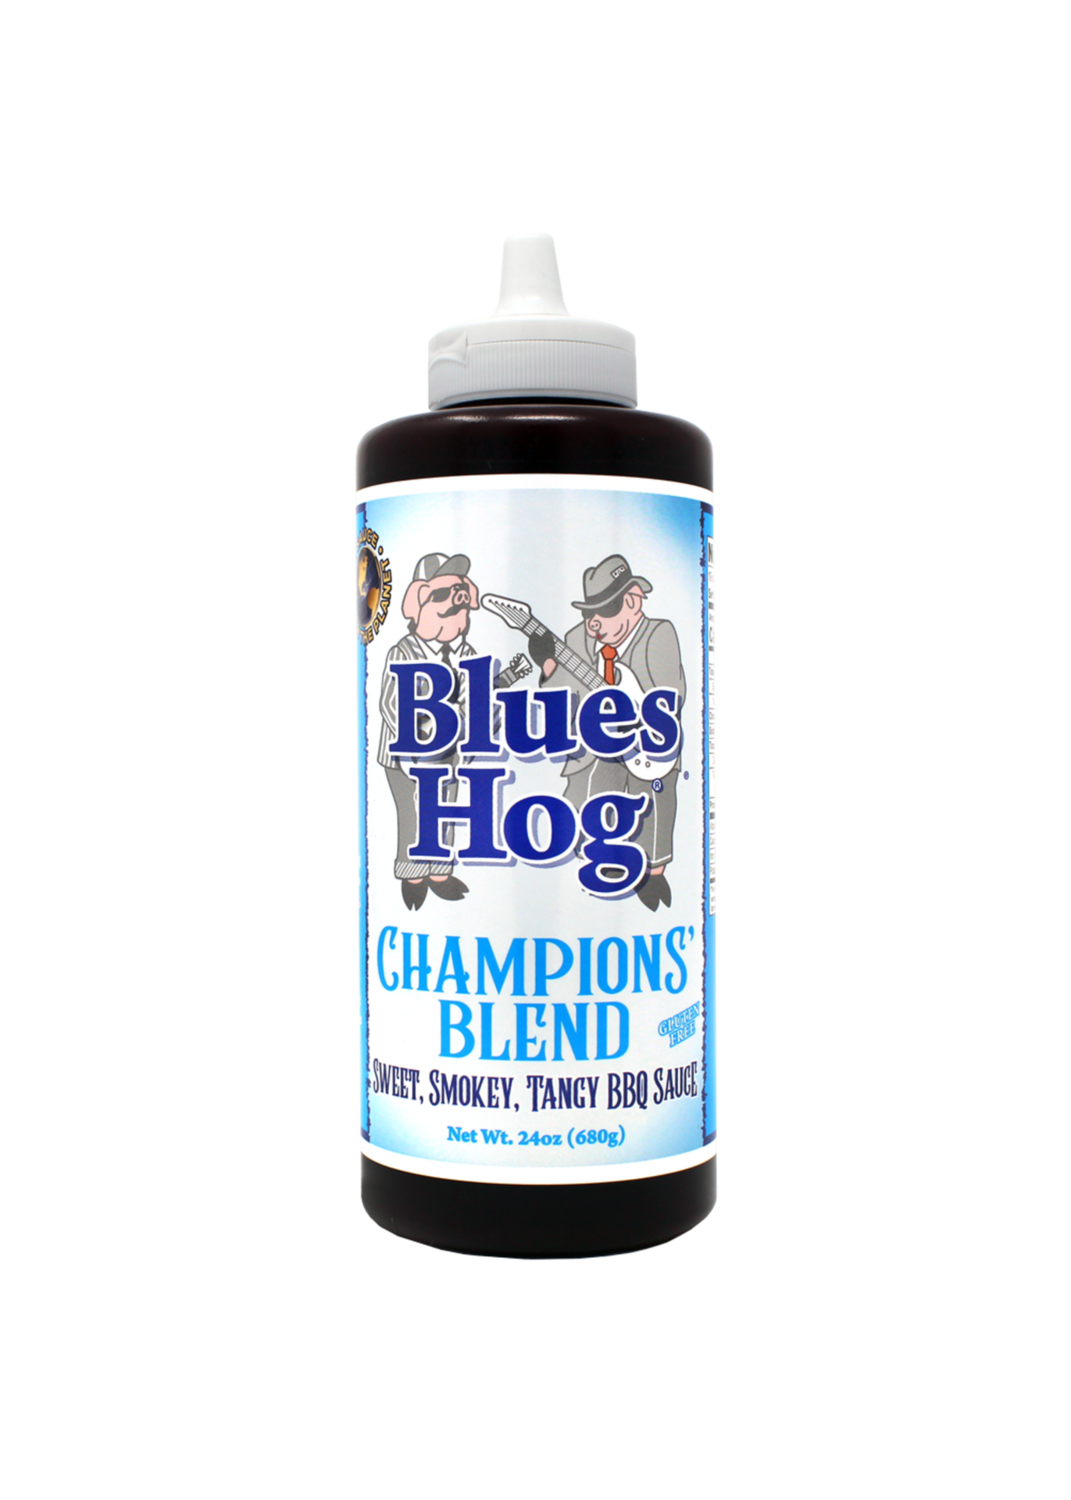 Blues hog Champions Blend